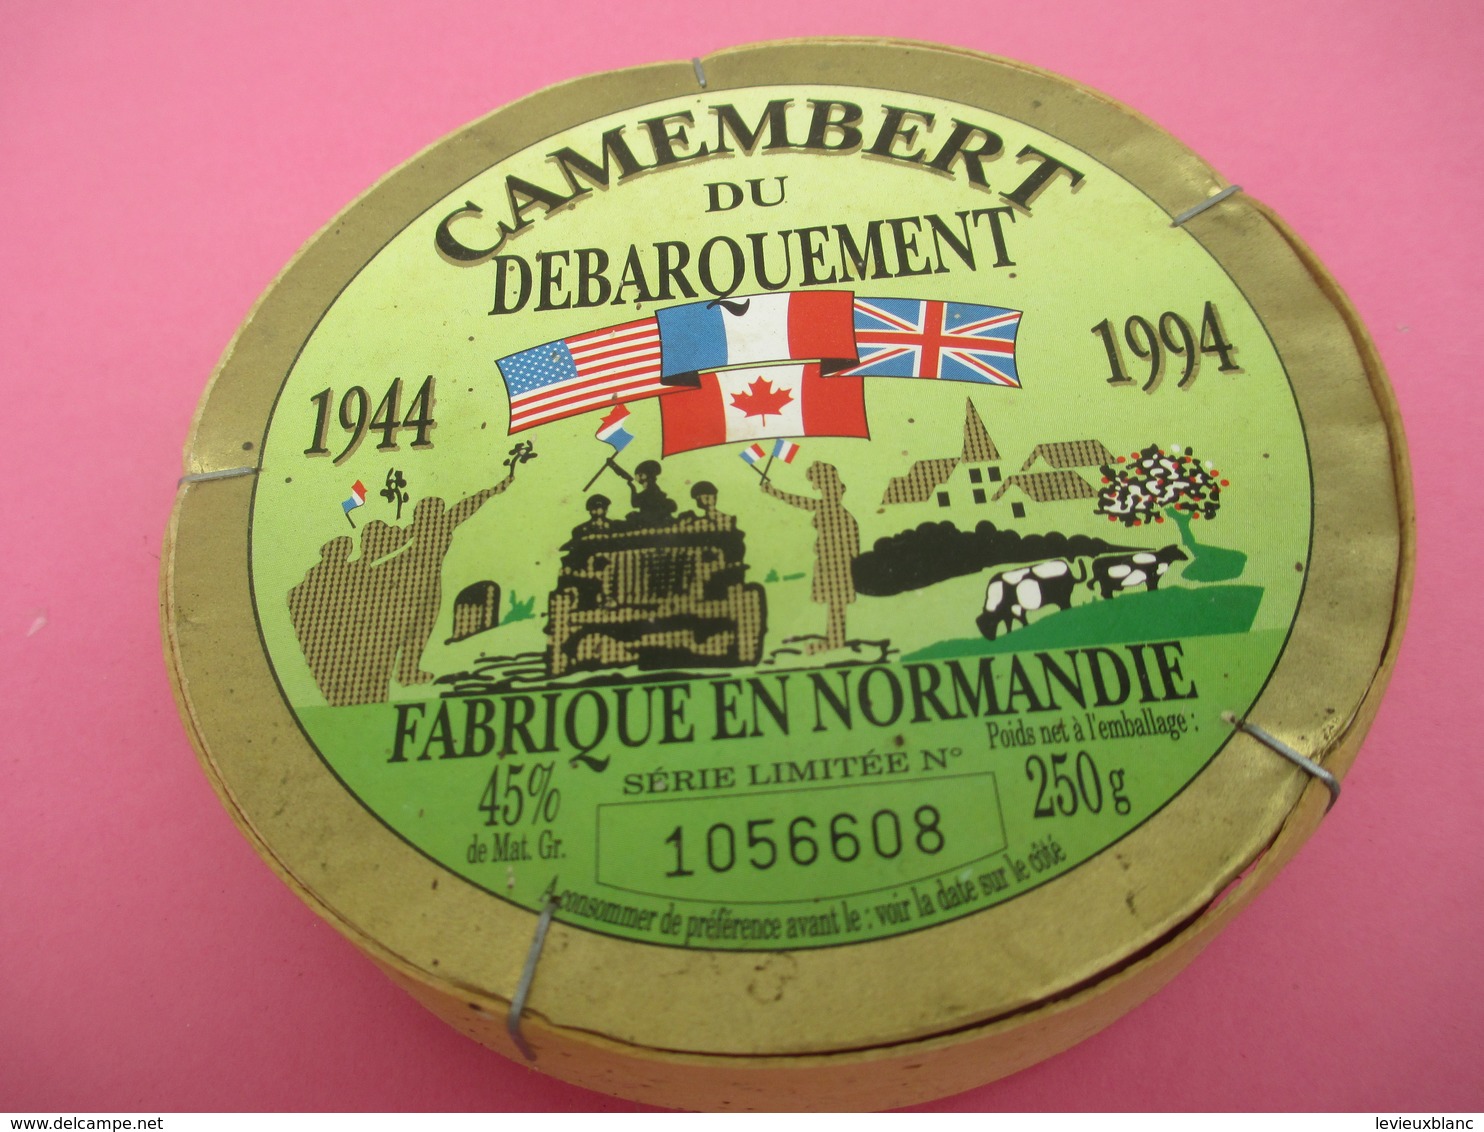 Boite De Camenbert Vide Mais Entière/Camenbert Du DEBARQUEMENT/Cinquantenaire/ Fabriqué En Normandie/1994      FROM44 - Fromage